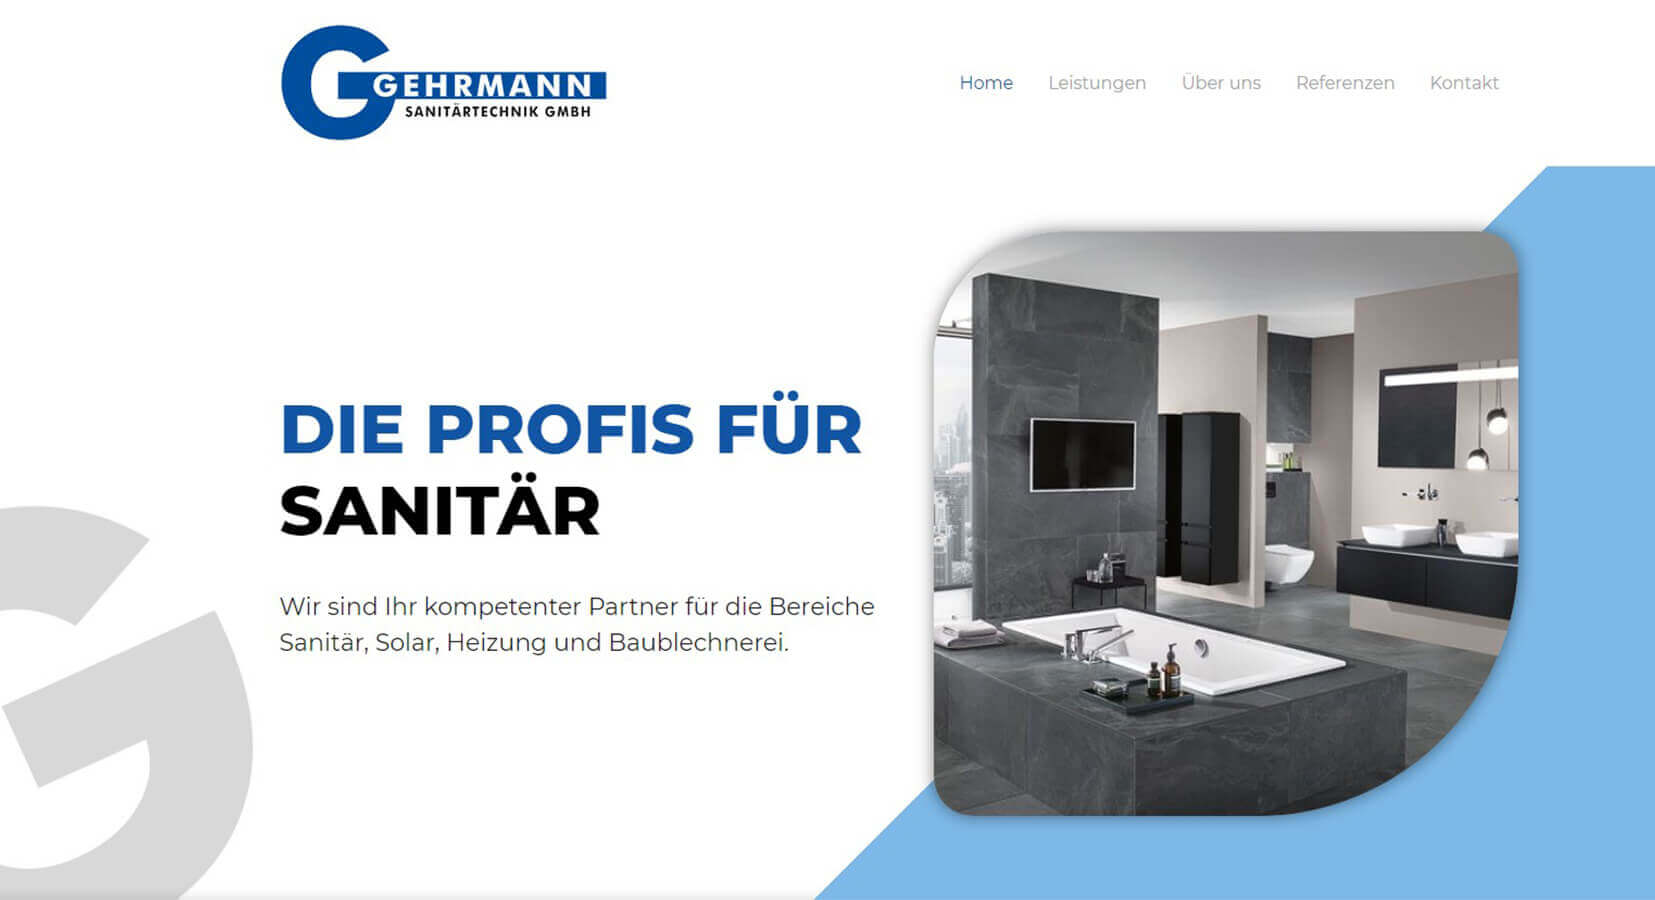 homepage-business-referenz-gehrmann-sanitaertechnik